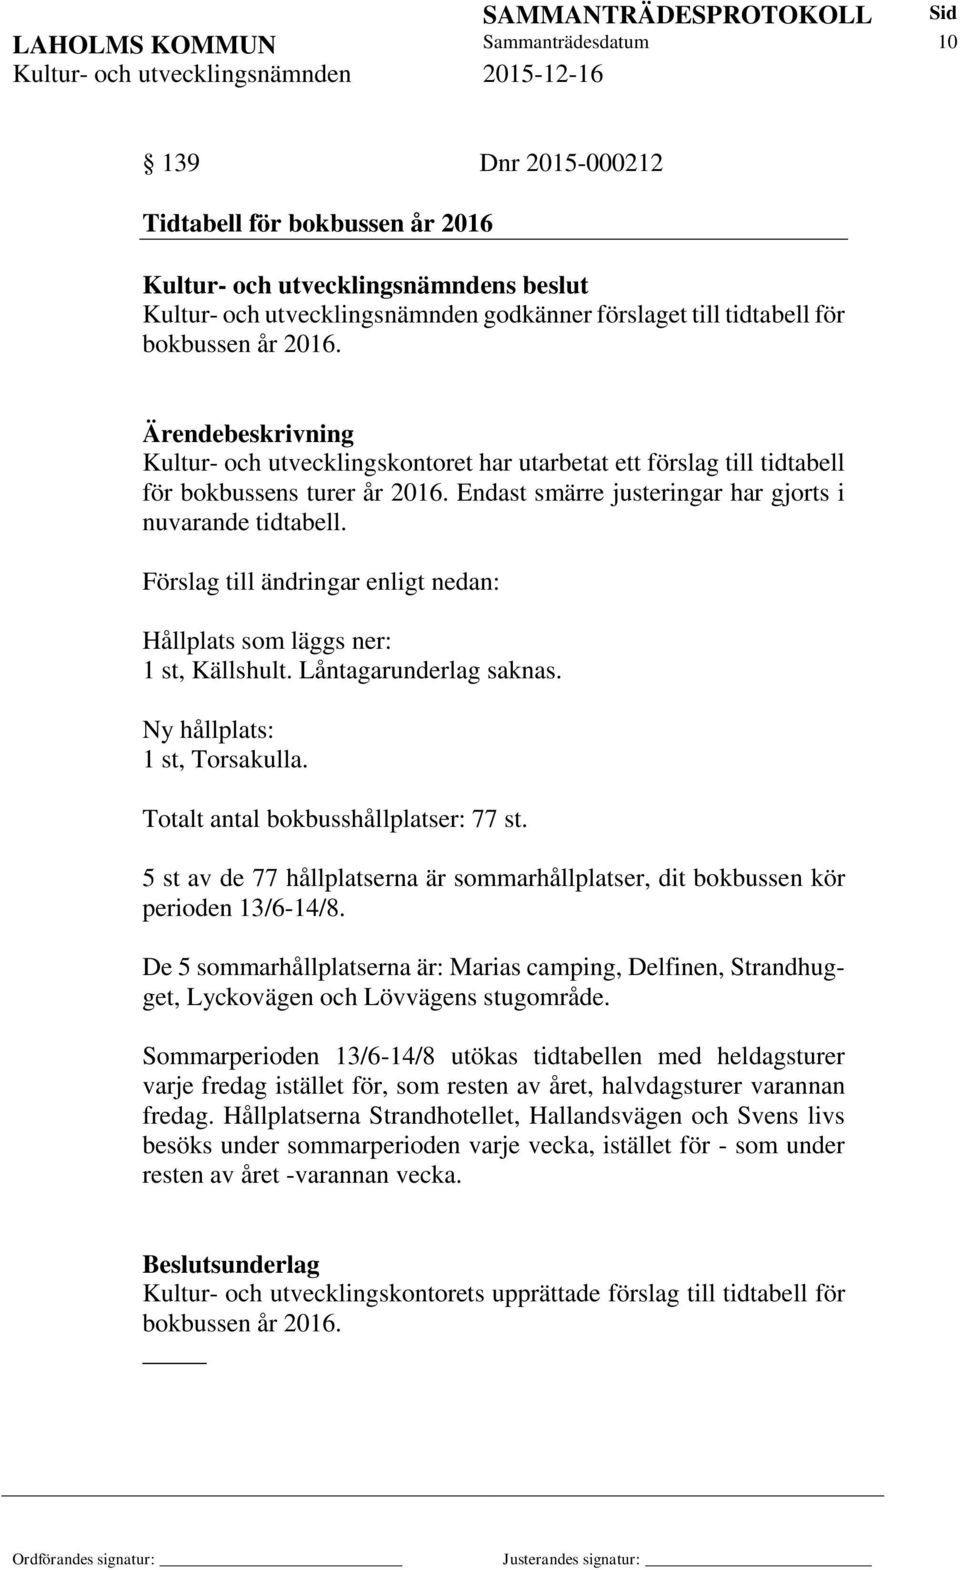 Förslag till ändringar enligt nedan: Hållplats som läggs ner: 1 st, Källshult. Låntagarunderlag saknas. Ny hållplats: 1 st, Torsakulla. Totalt antal bokbusshållplatser: 77 st.